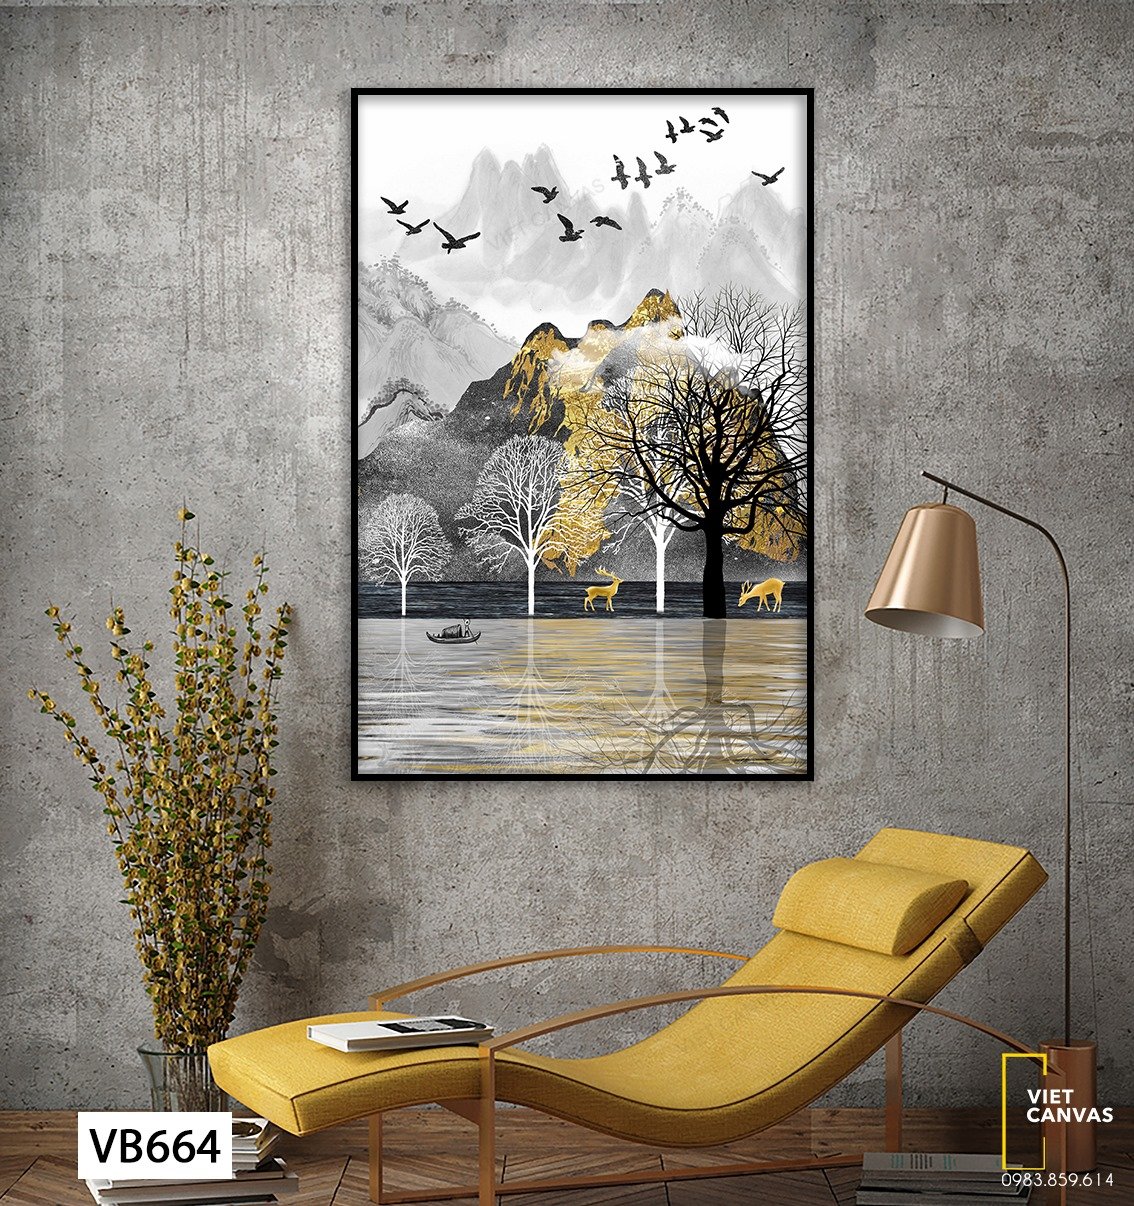 Tranh Phong Cảnh Miền Núi - VB664 – Viet Canvas